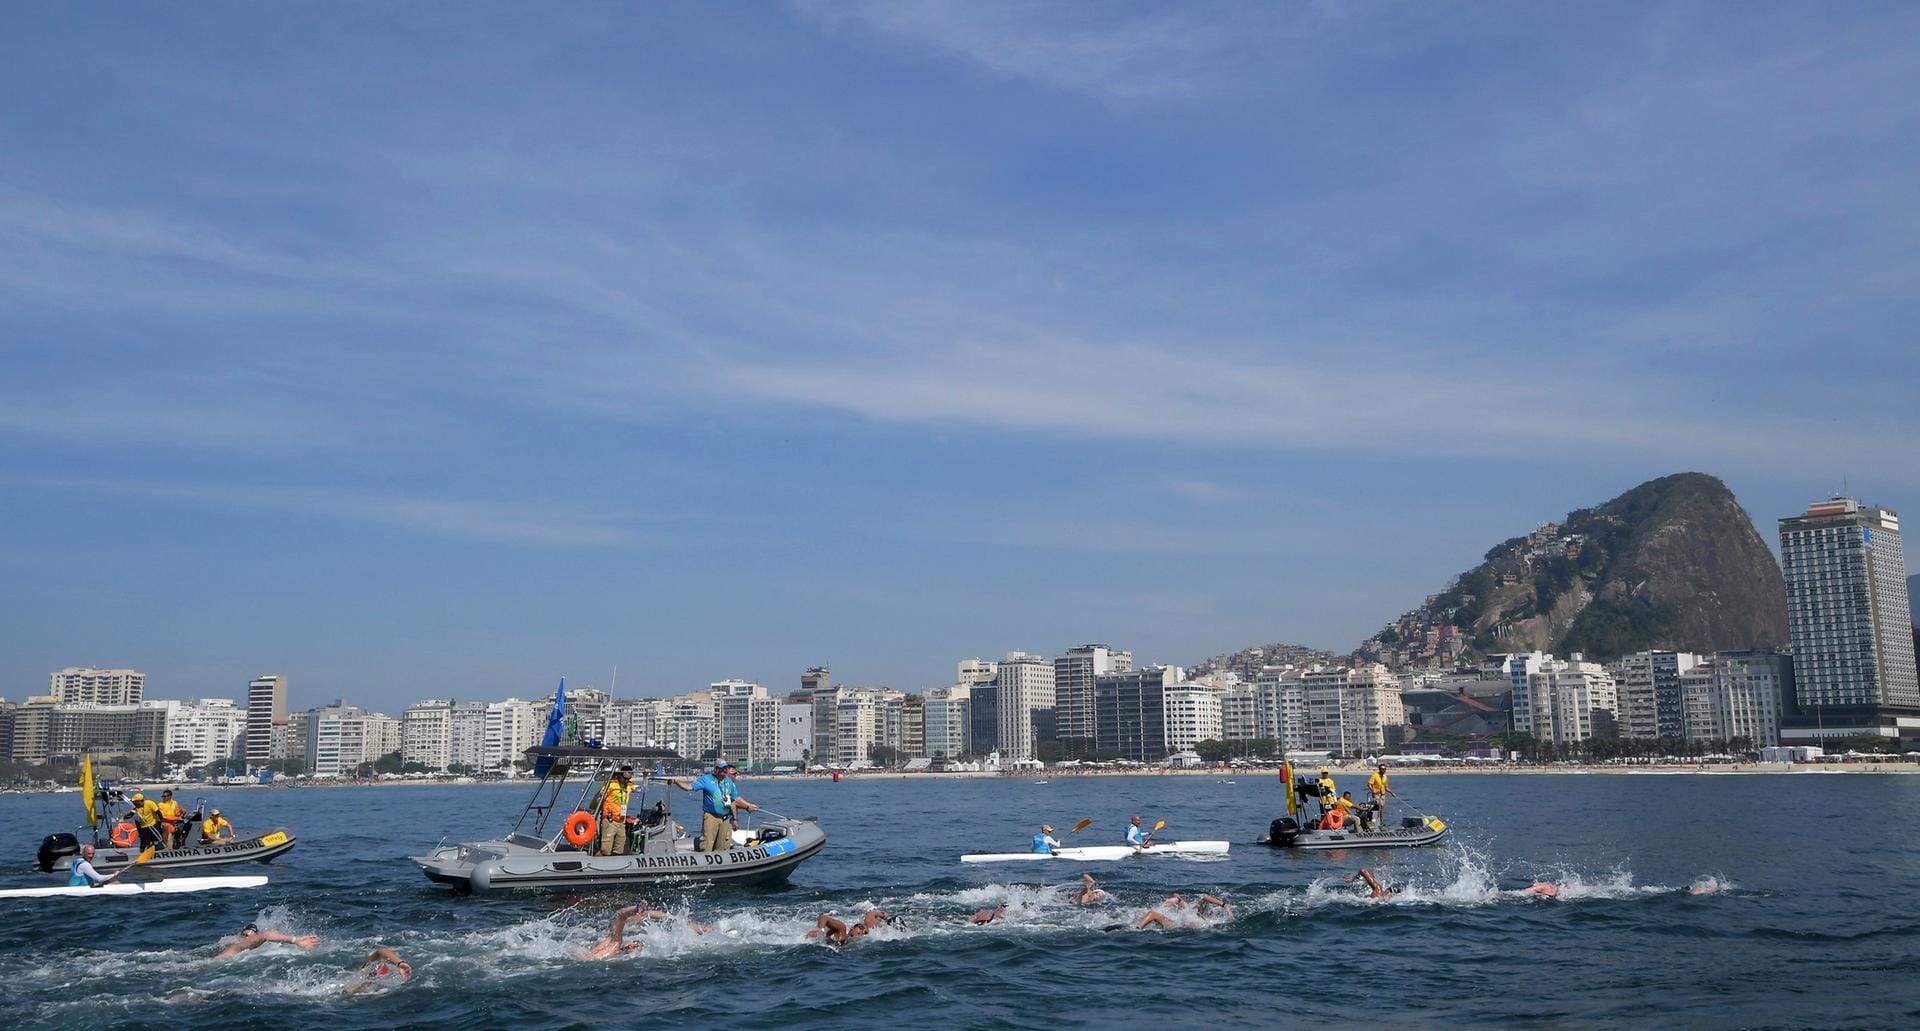 Für den tollen Ausblick auf die Küste Rios und die angrenzenden Berge haben die Freischwimmer in ihrem 10-Kilometer-Rennen leider keine Zeit. Ihr Fokus liegt vielmehr auf der Aussicht auf olympisches Edelmetall.